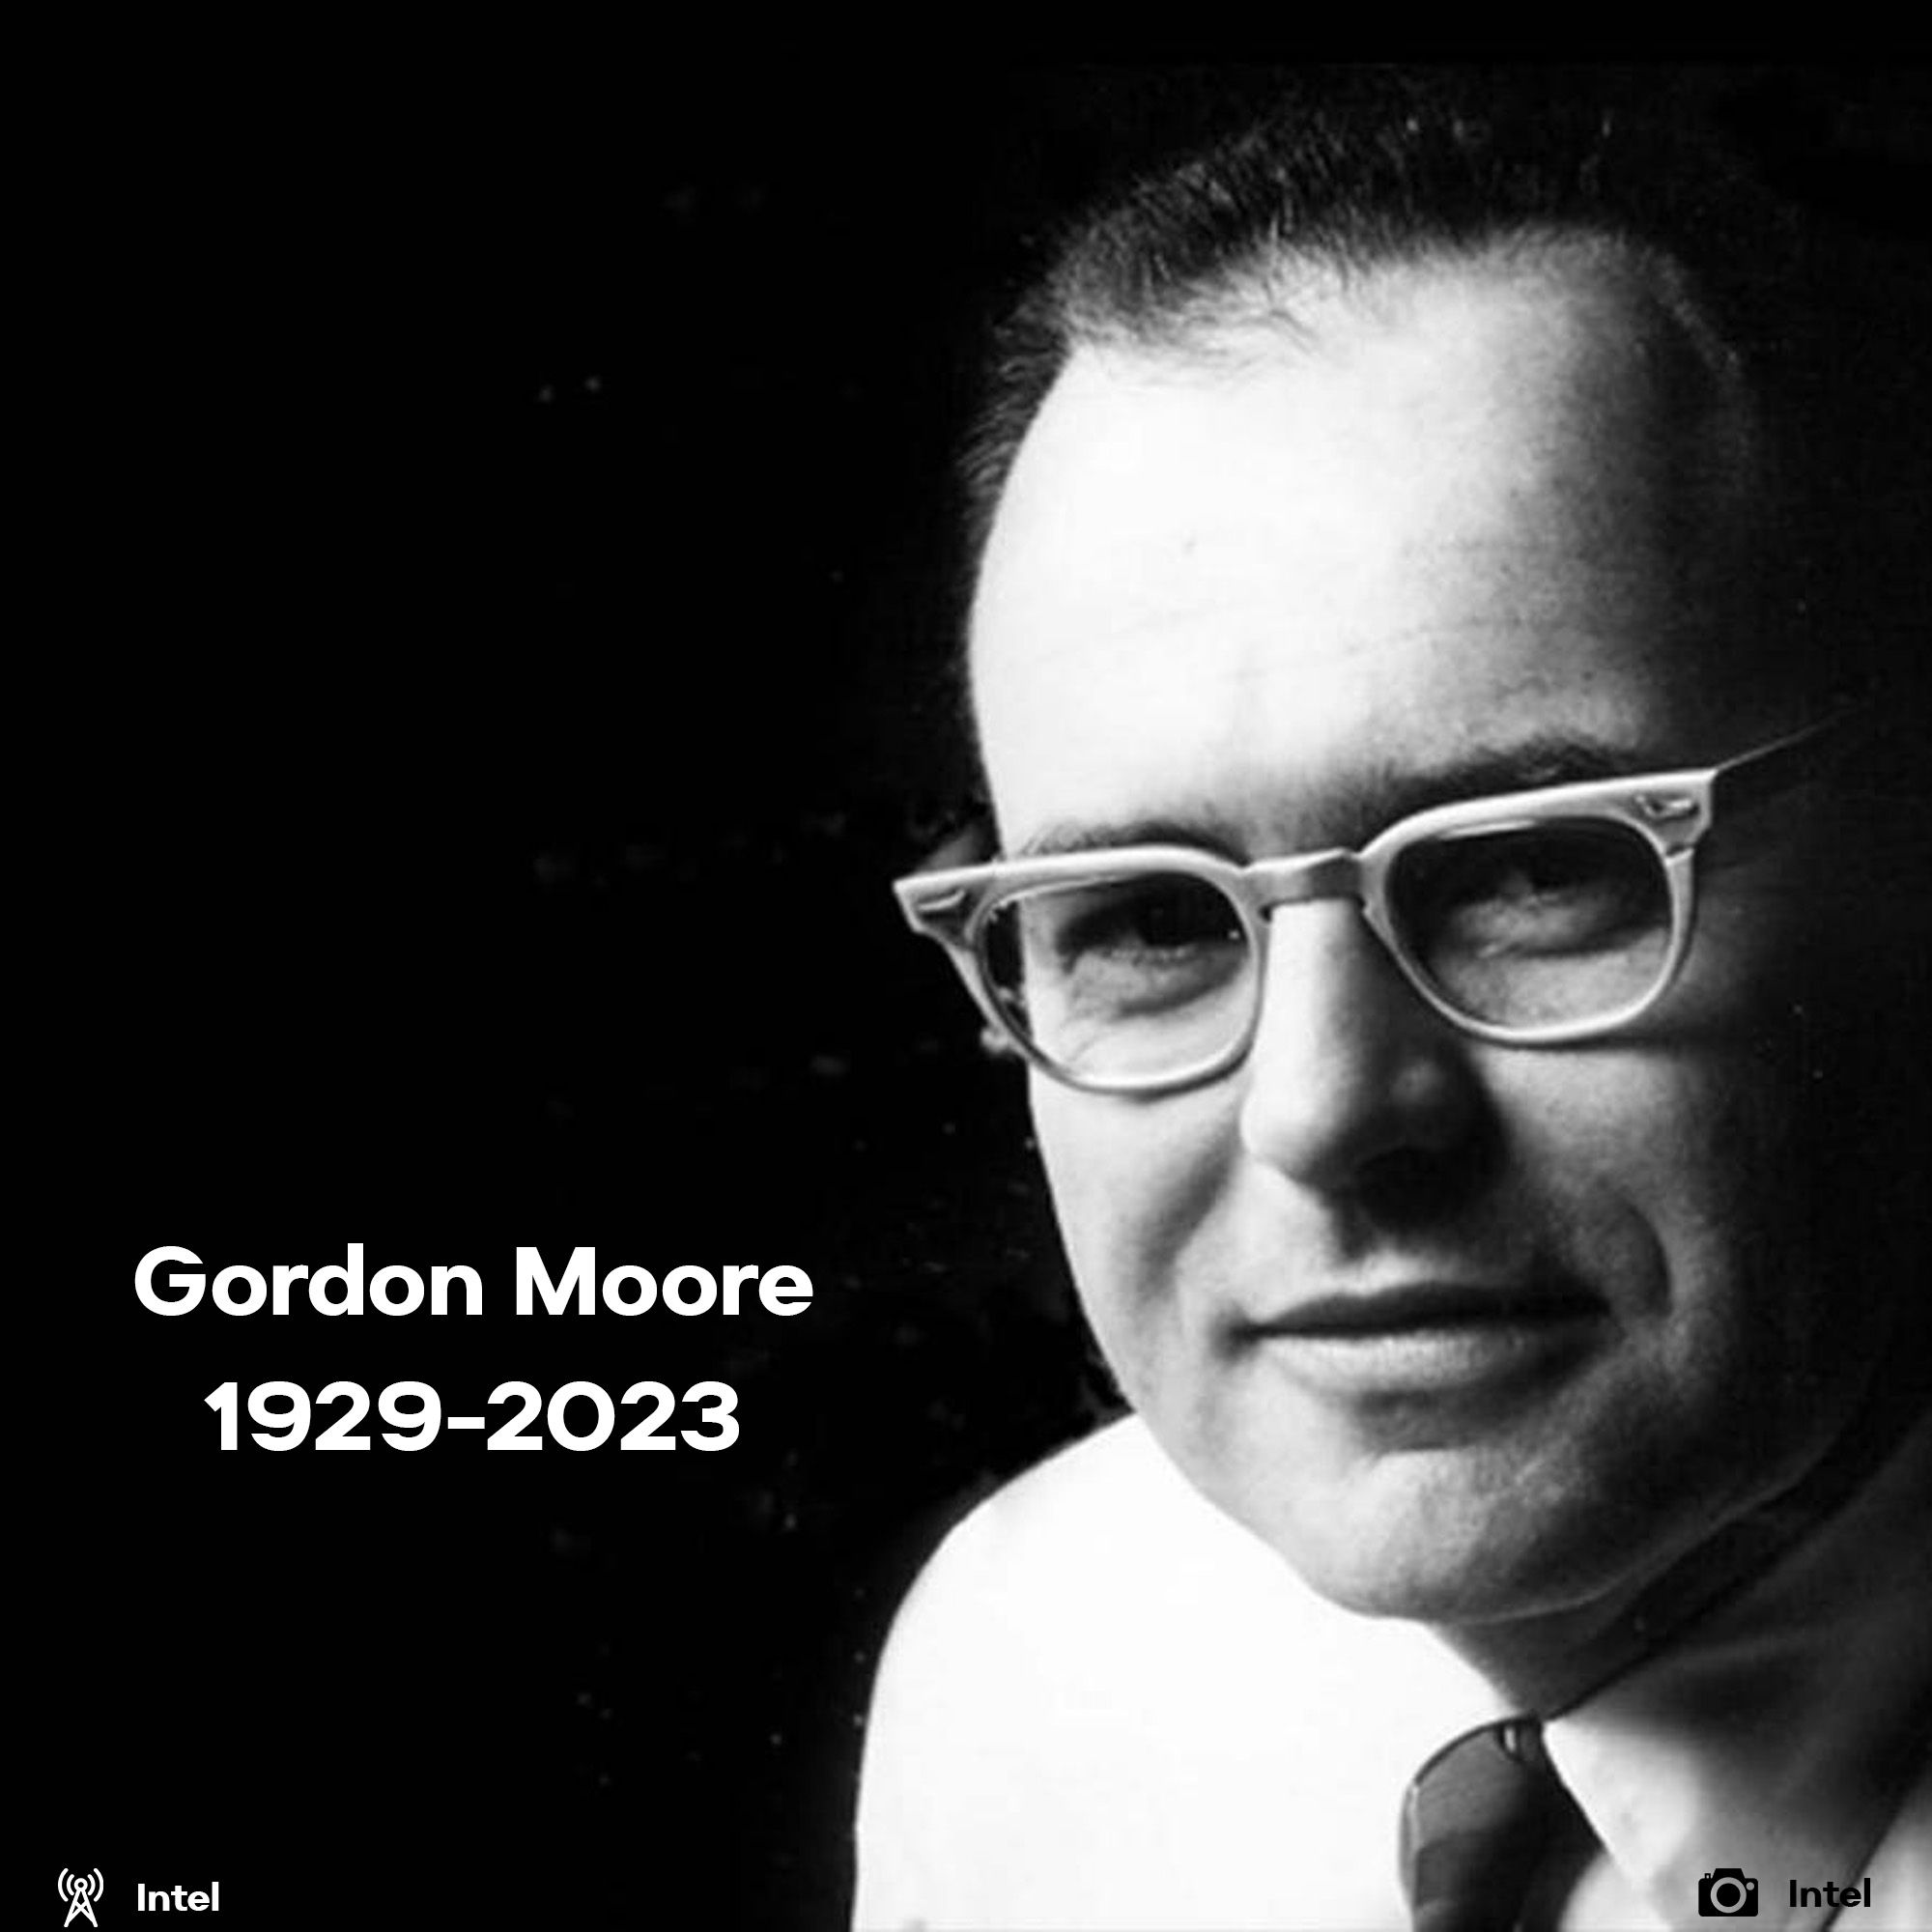 Gordon Moore